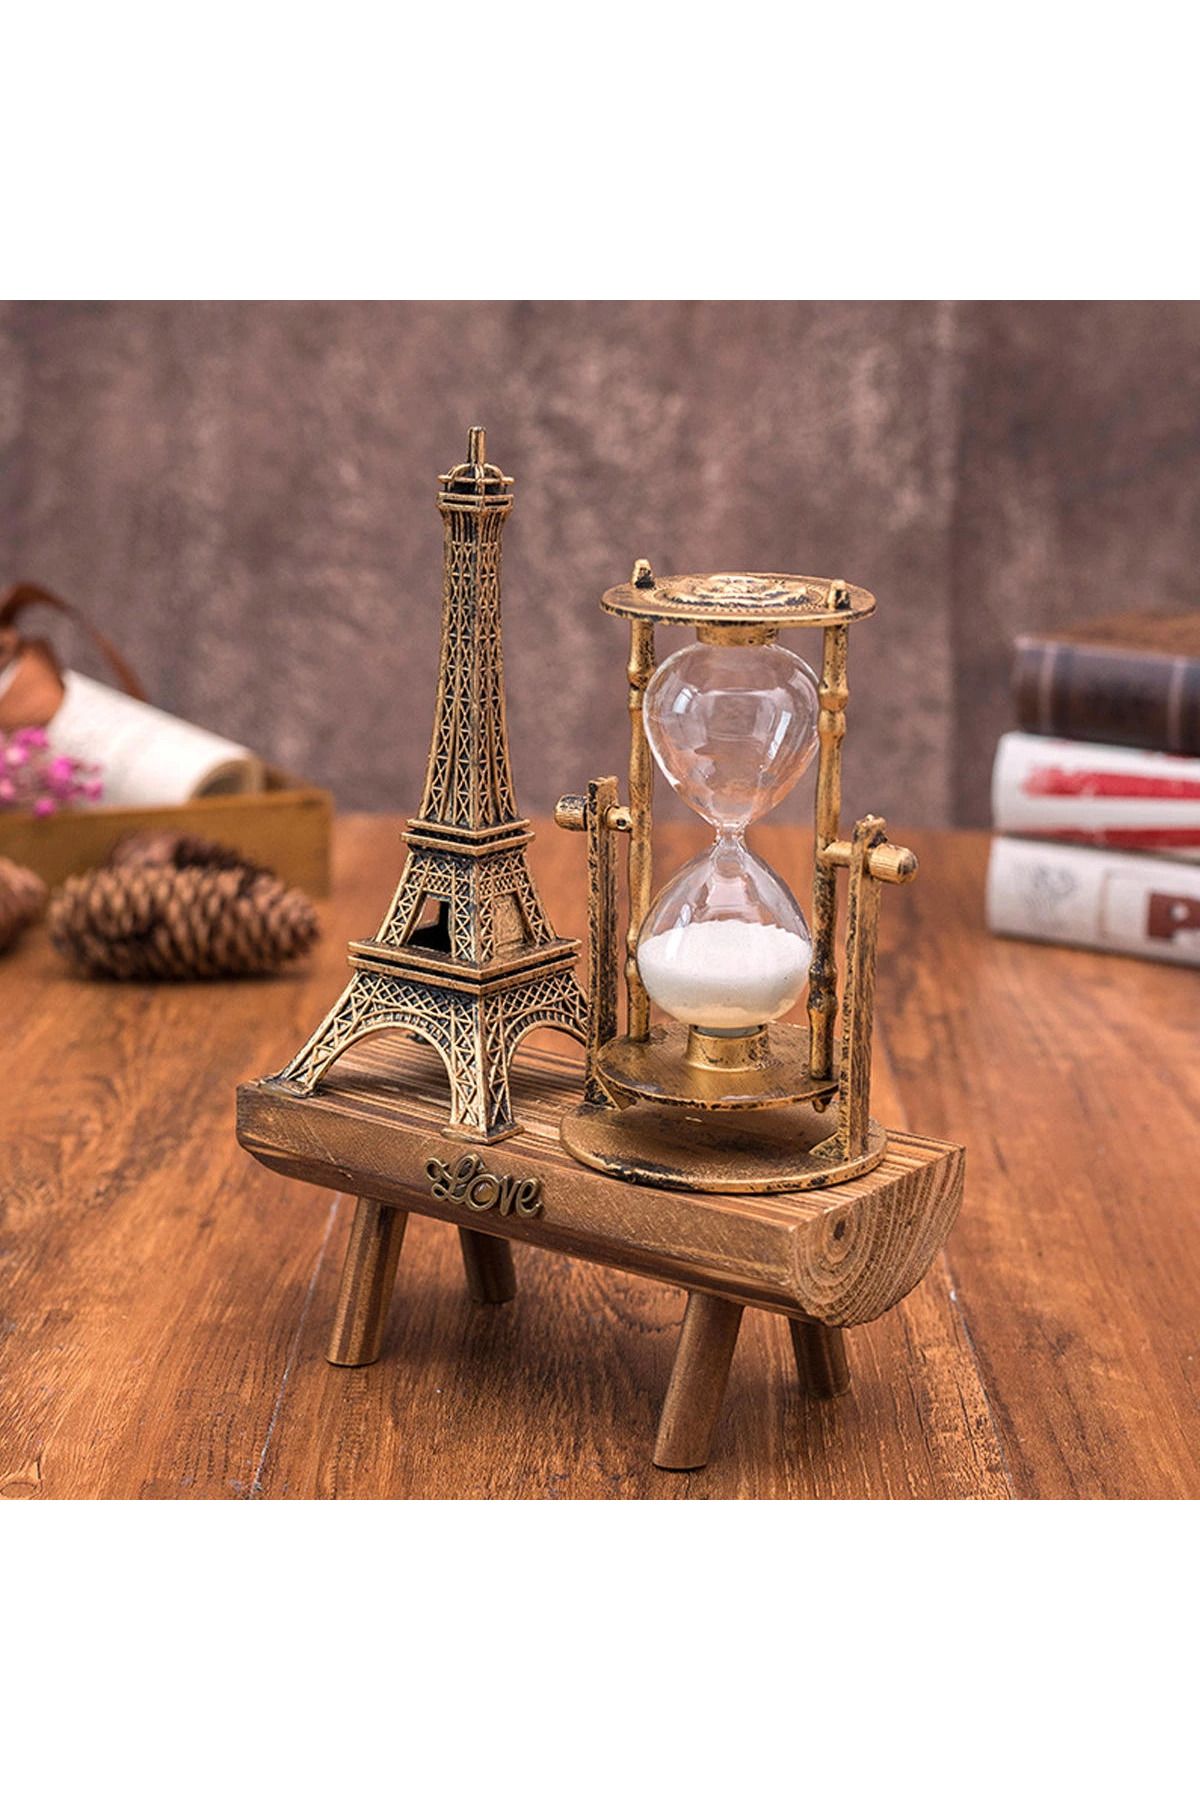 Karaca Arıcılık Eyfel Kulesi Paris Ahşap Kum Saati